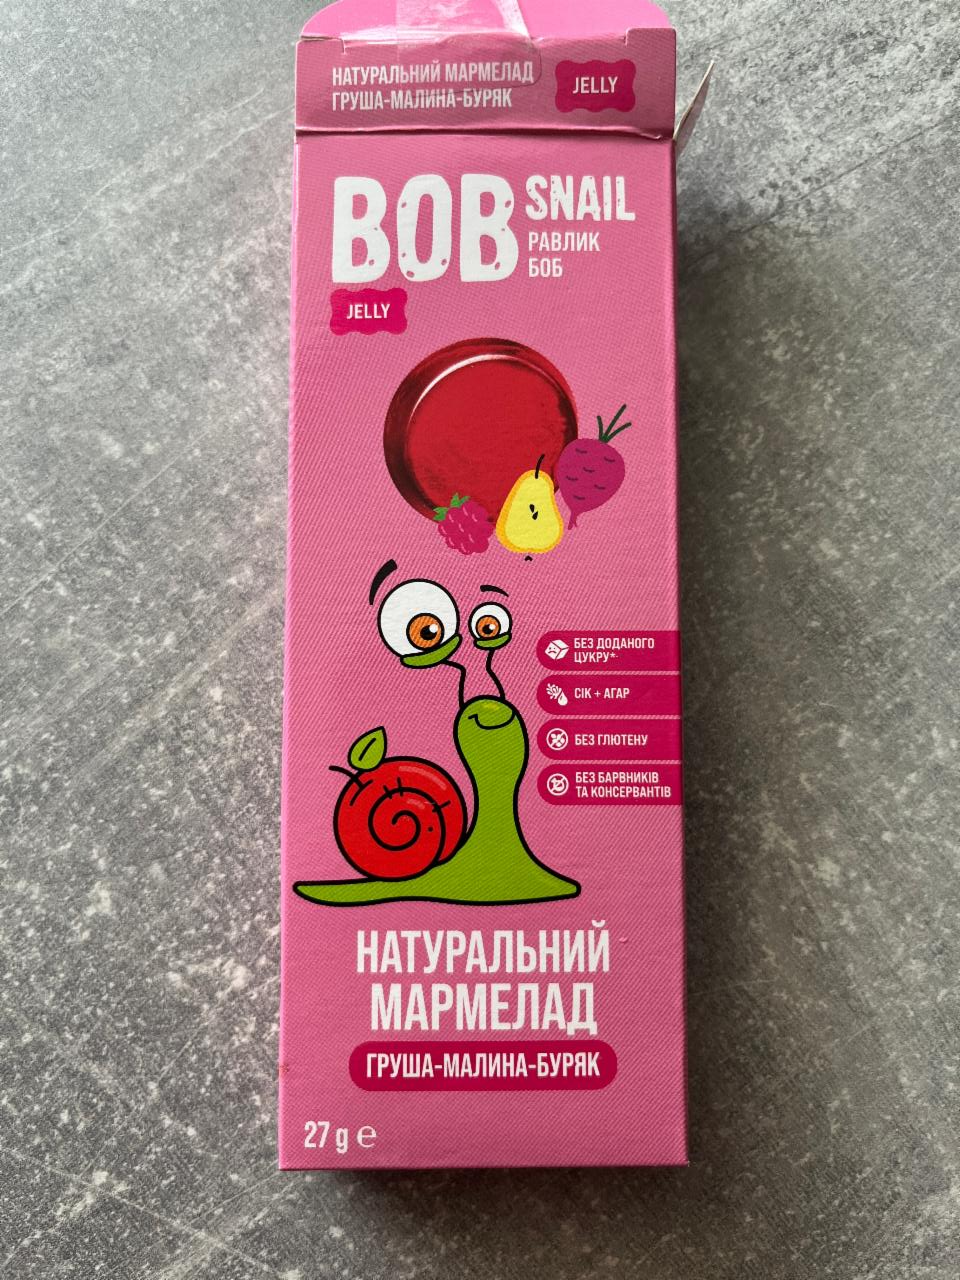 Фото - Мармелад фруктово-ягідно-овочевий Груша-Малина-Буряк Bob Snail